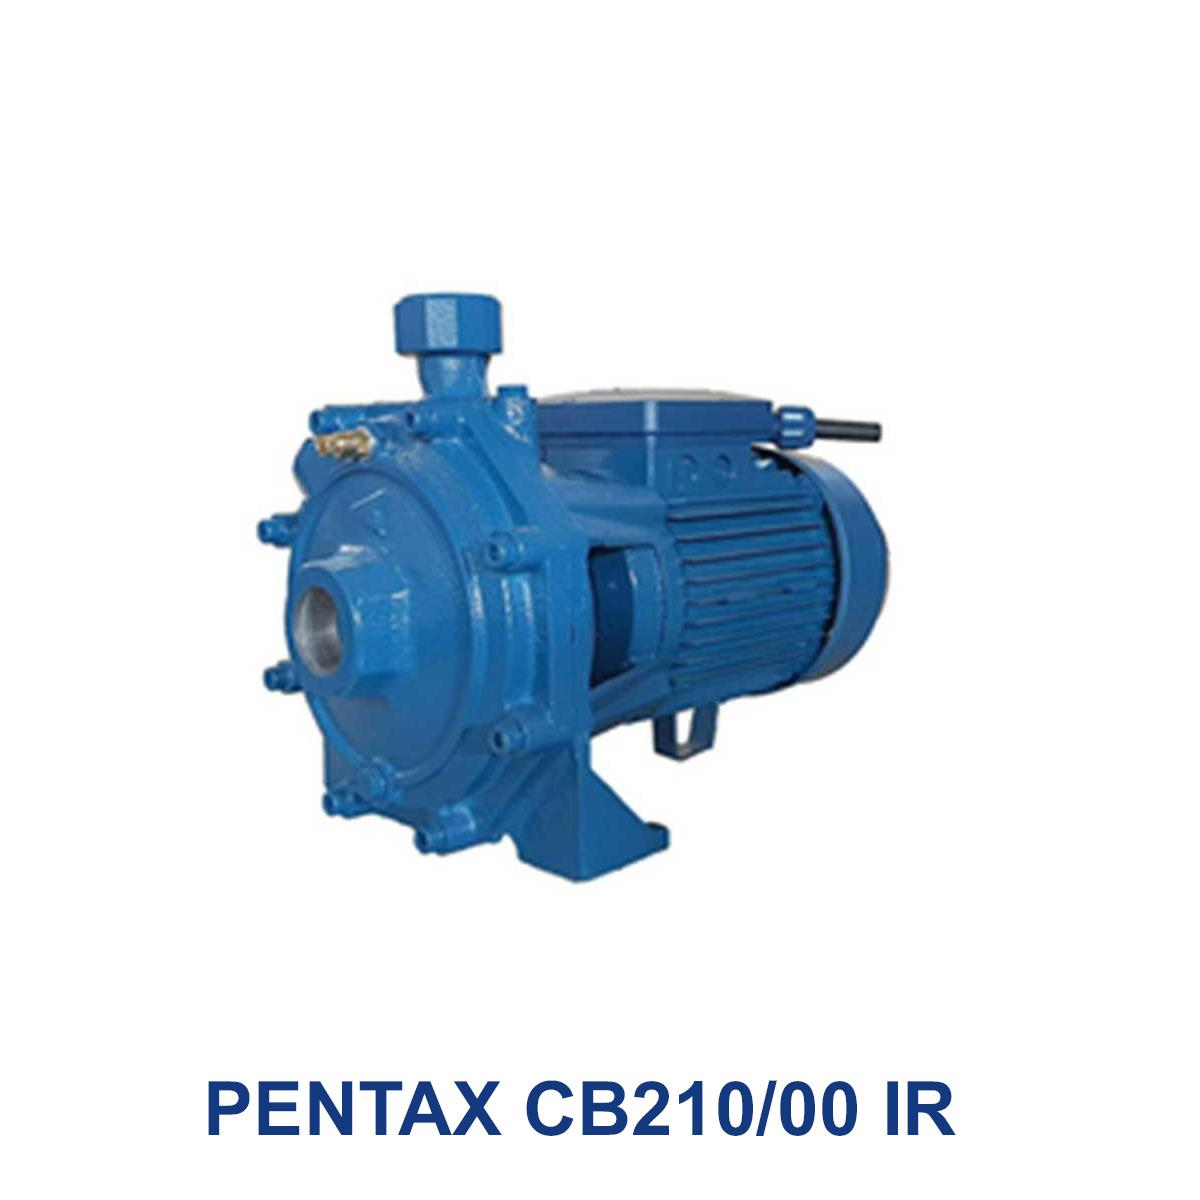 PENTAX-CB210-00-IR